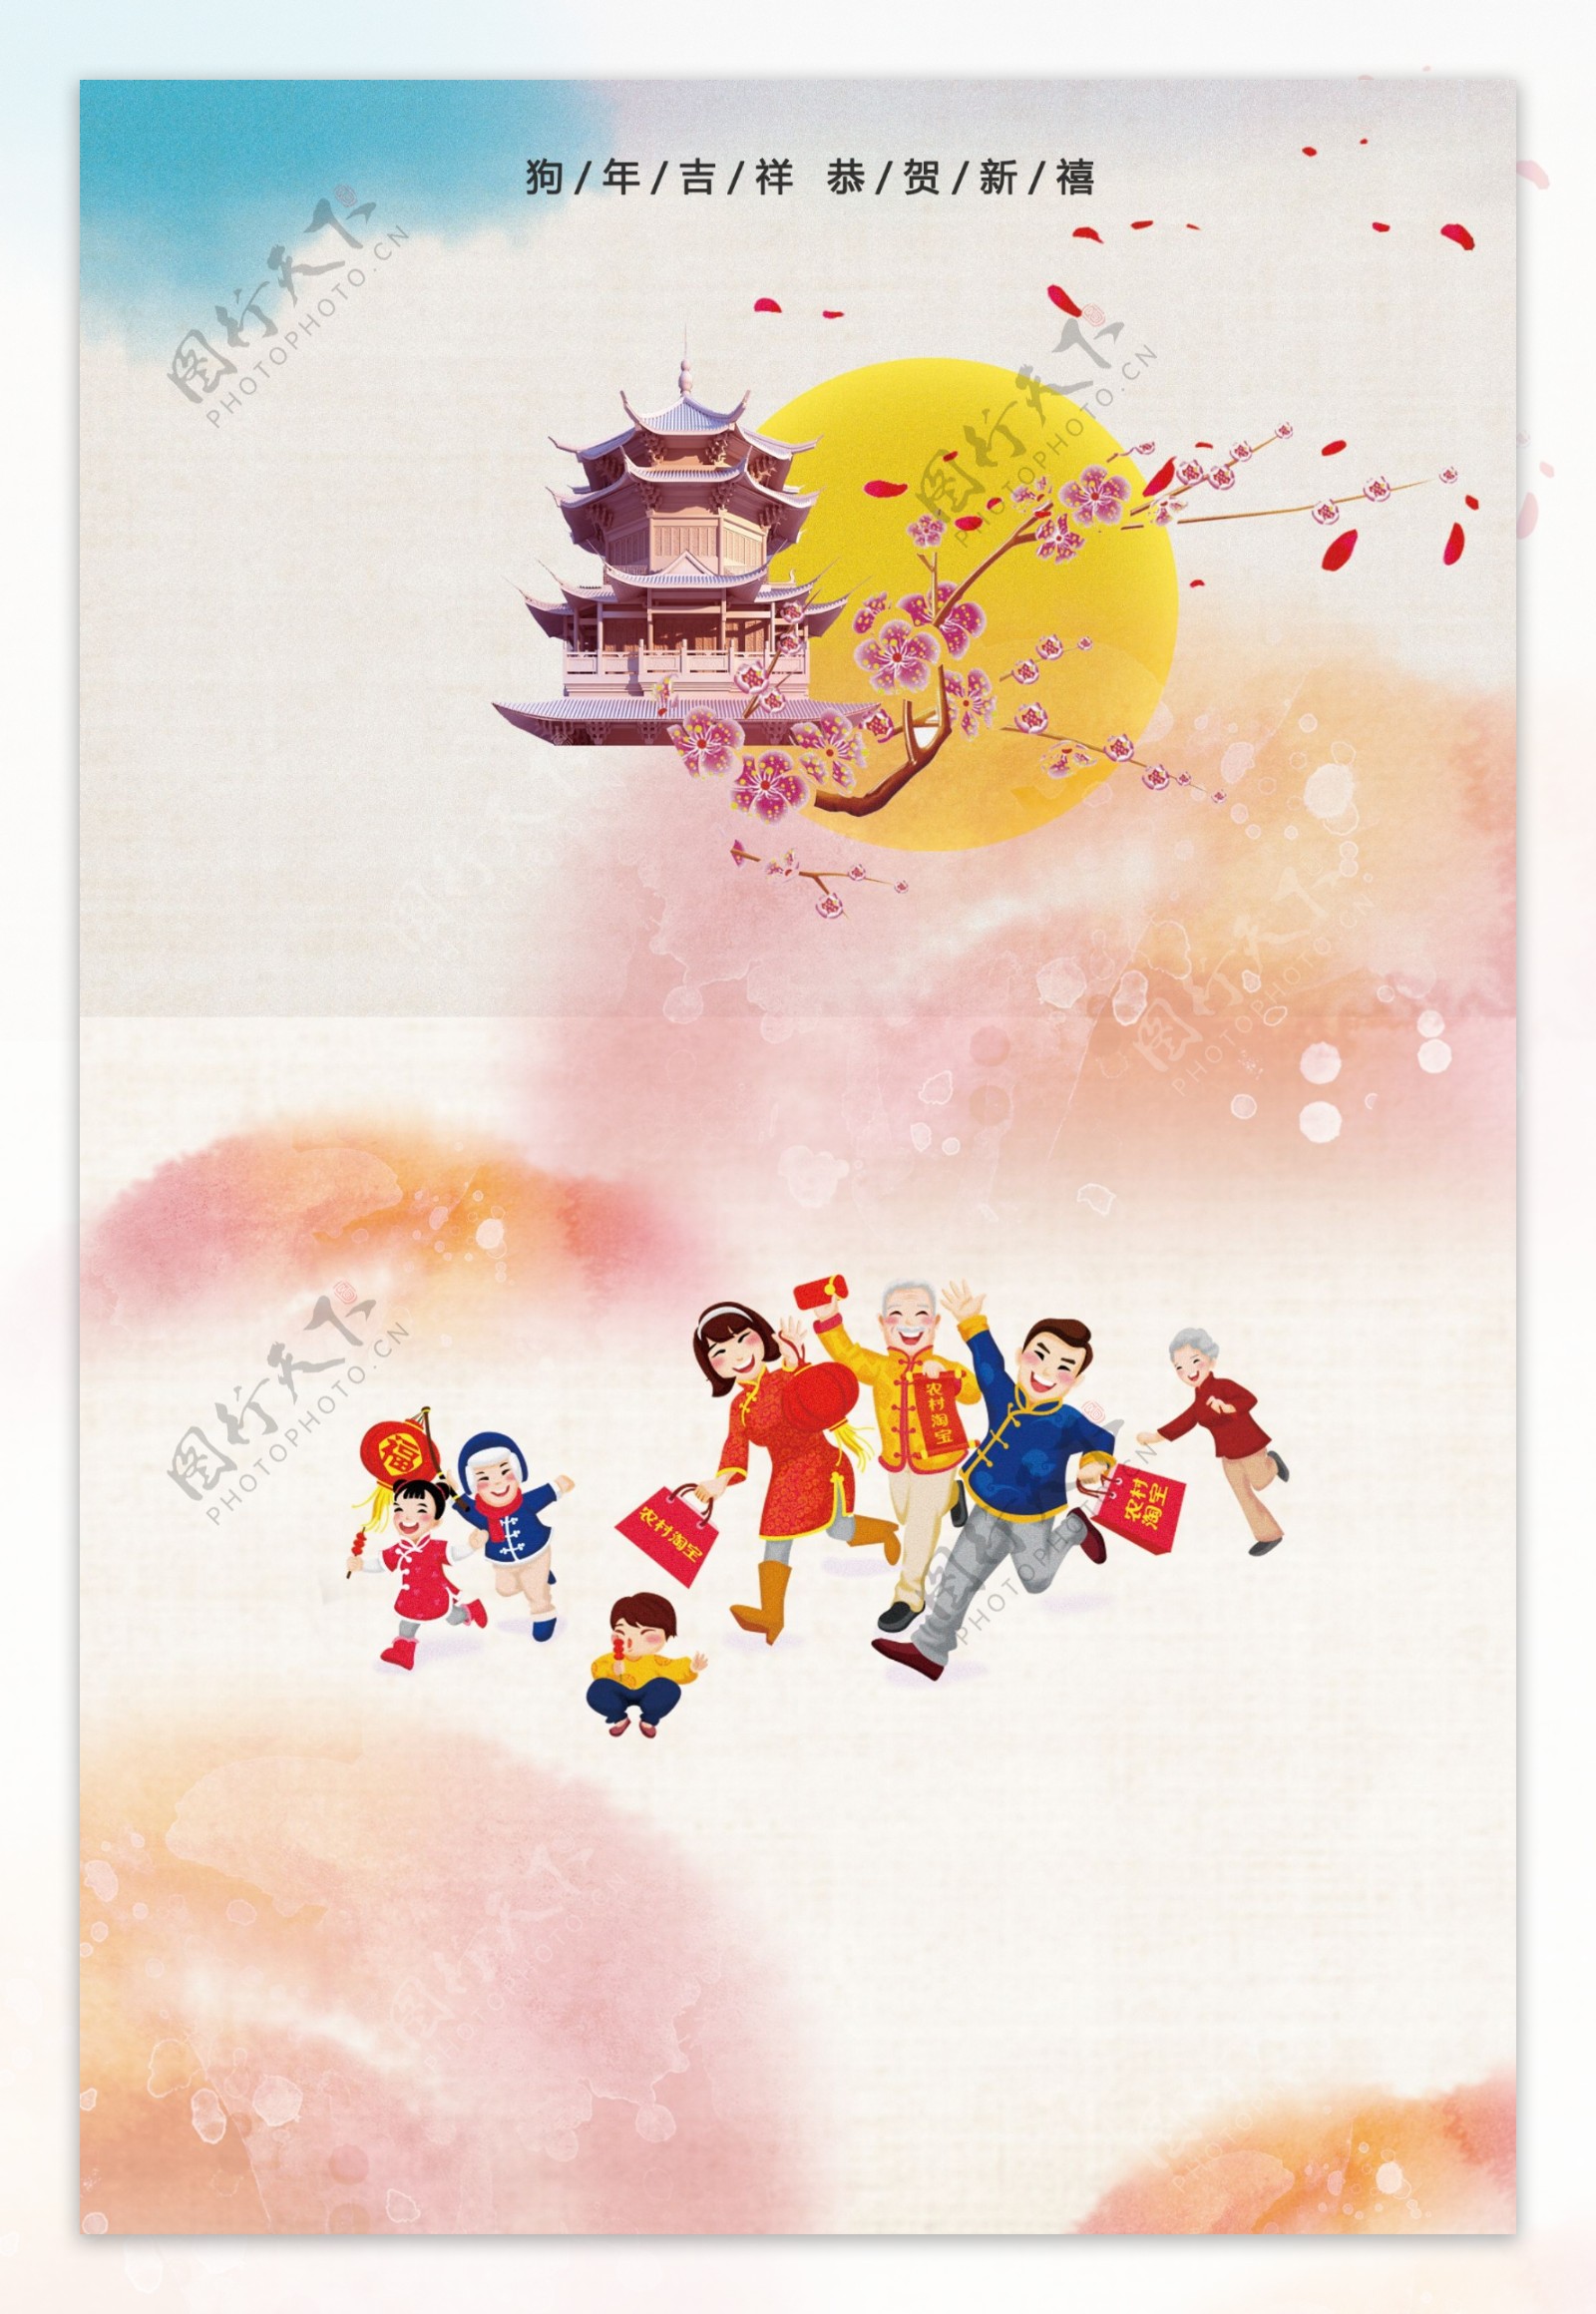 中式2018狗年春节海报背景设计